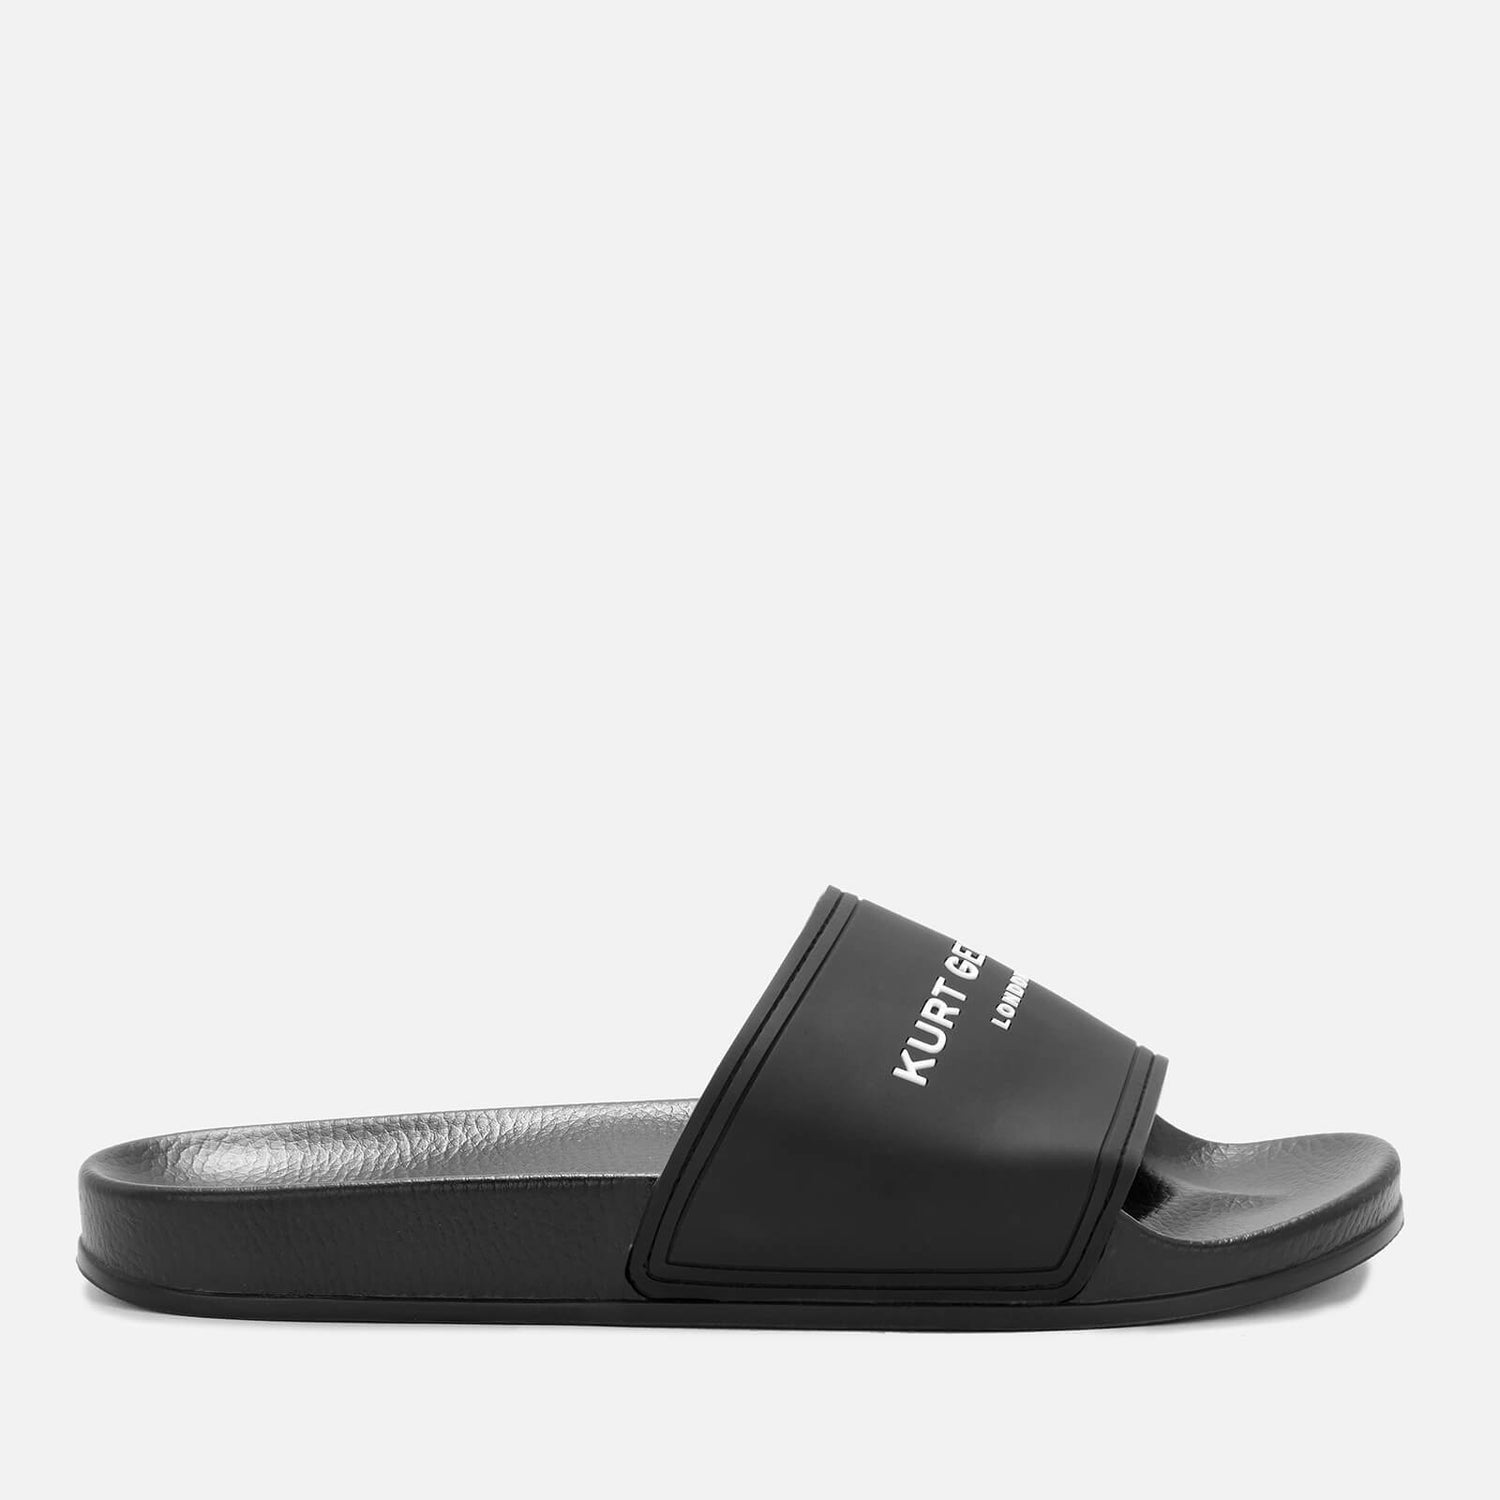 Kurt Geiger London Men's Slide Sandals - Black | FREE UK Delivery | Allsole